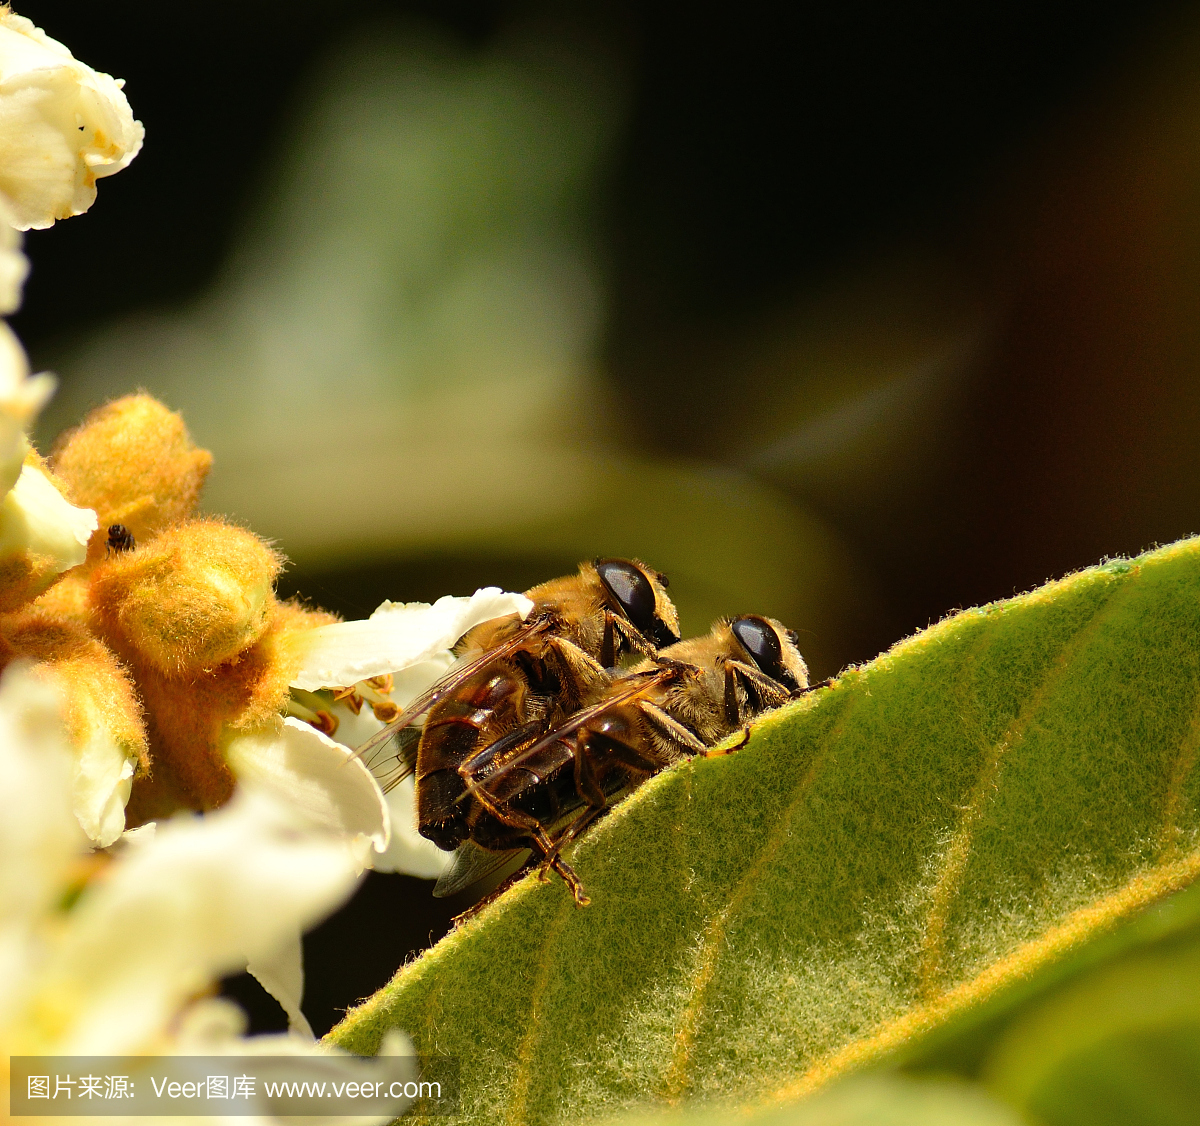 蜜蜂在一个枸杞树叶上的交配仪式